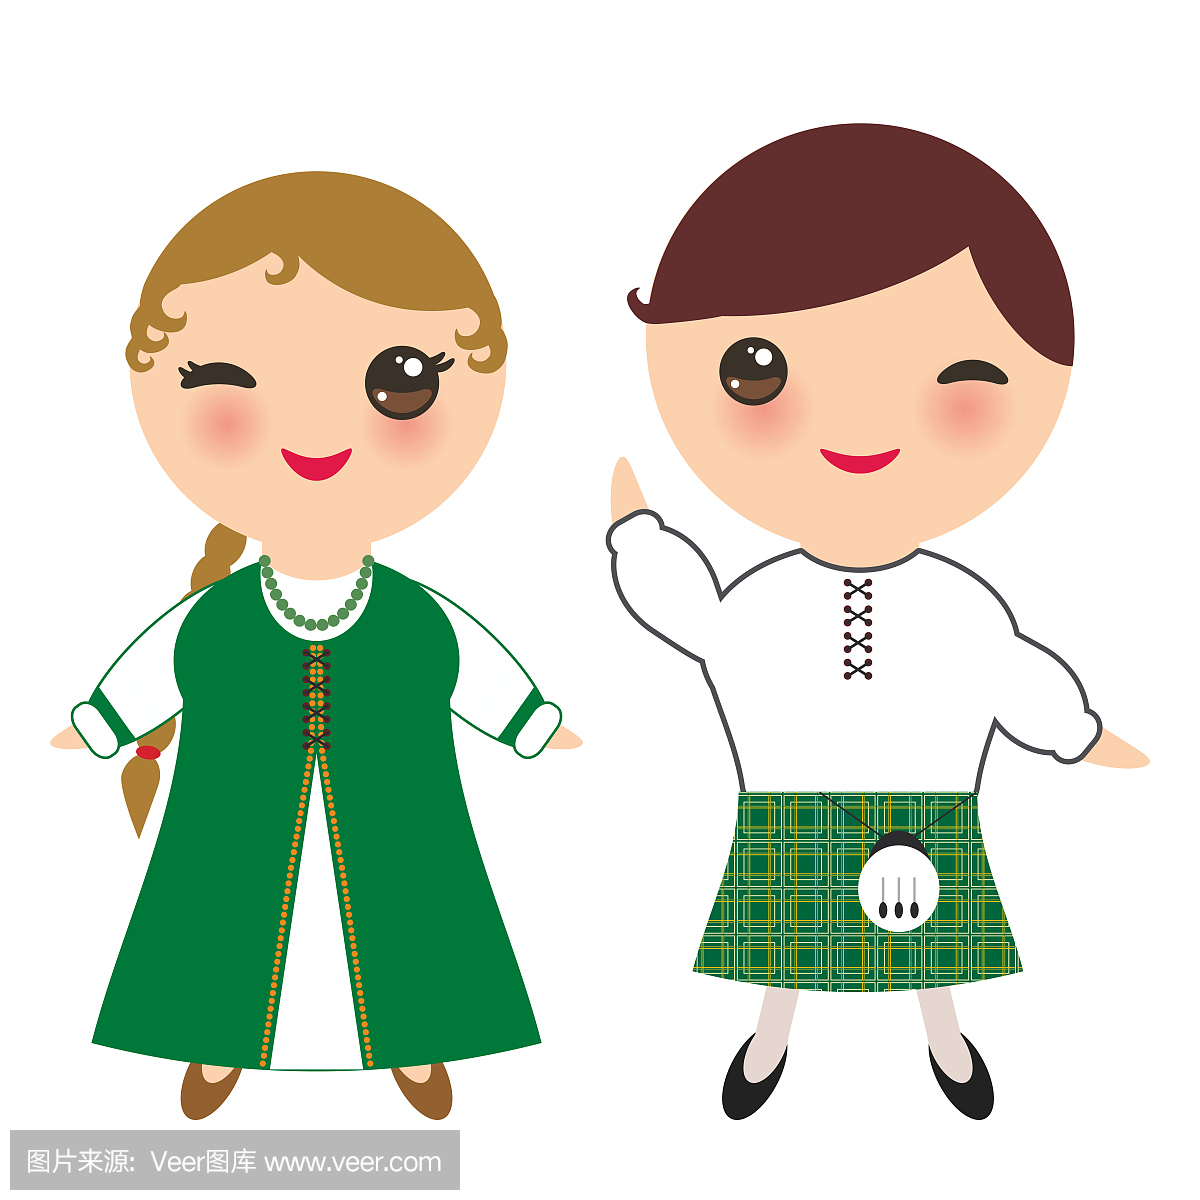 爱尔兰男孩和女孩在民族服装和帽子。在传统的